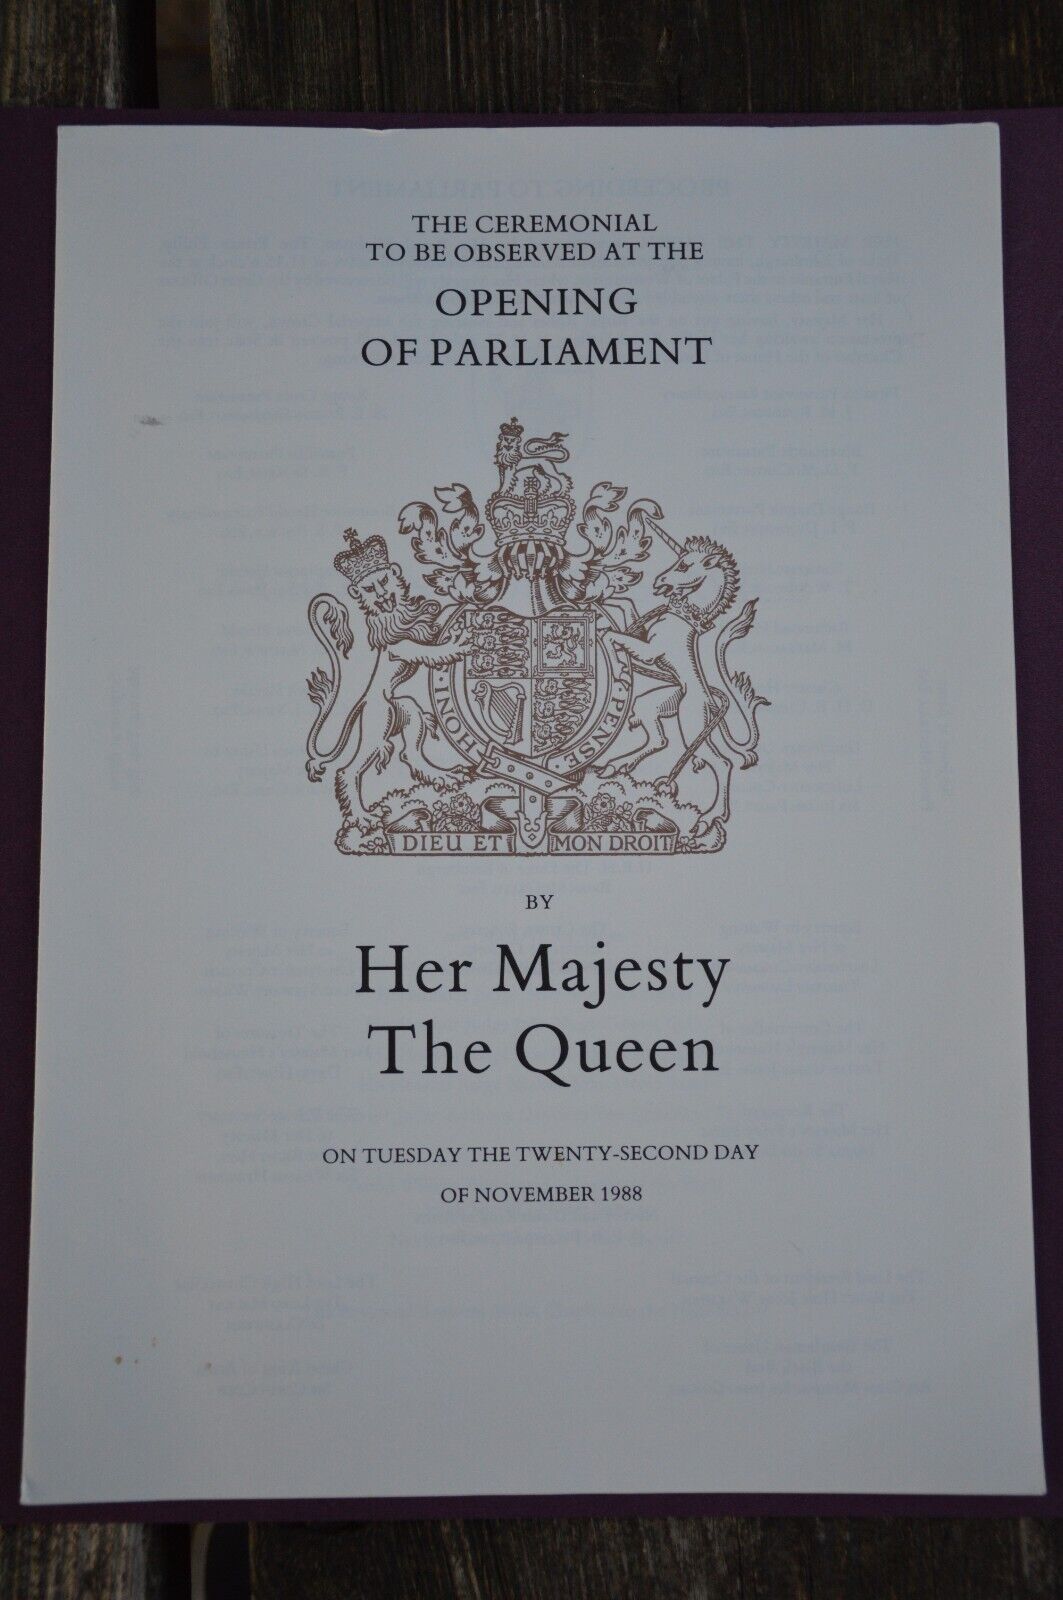 Queen Elizabeth II Opening of Parliament 1988 Order of Ceremony